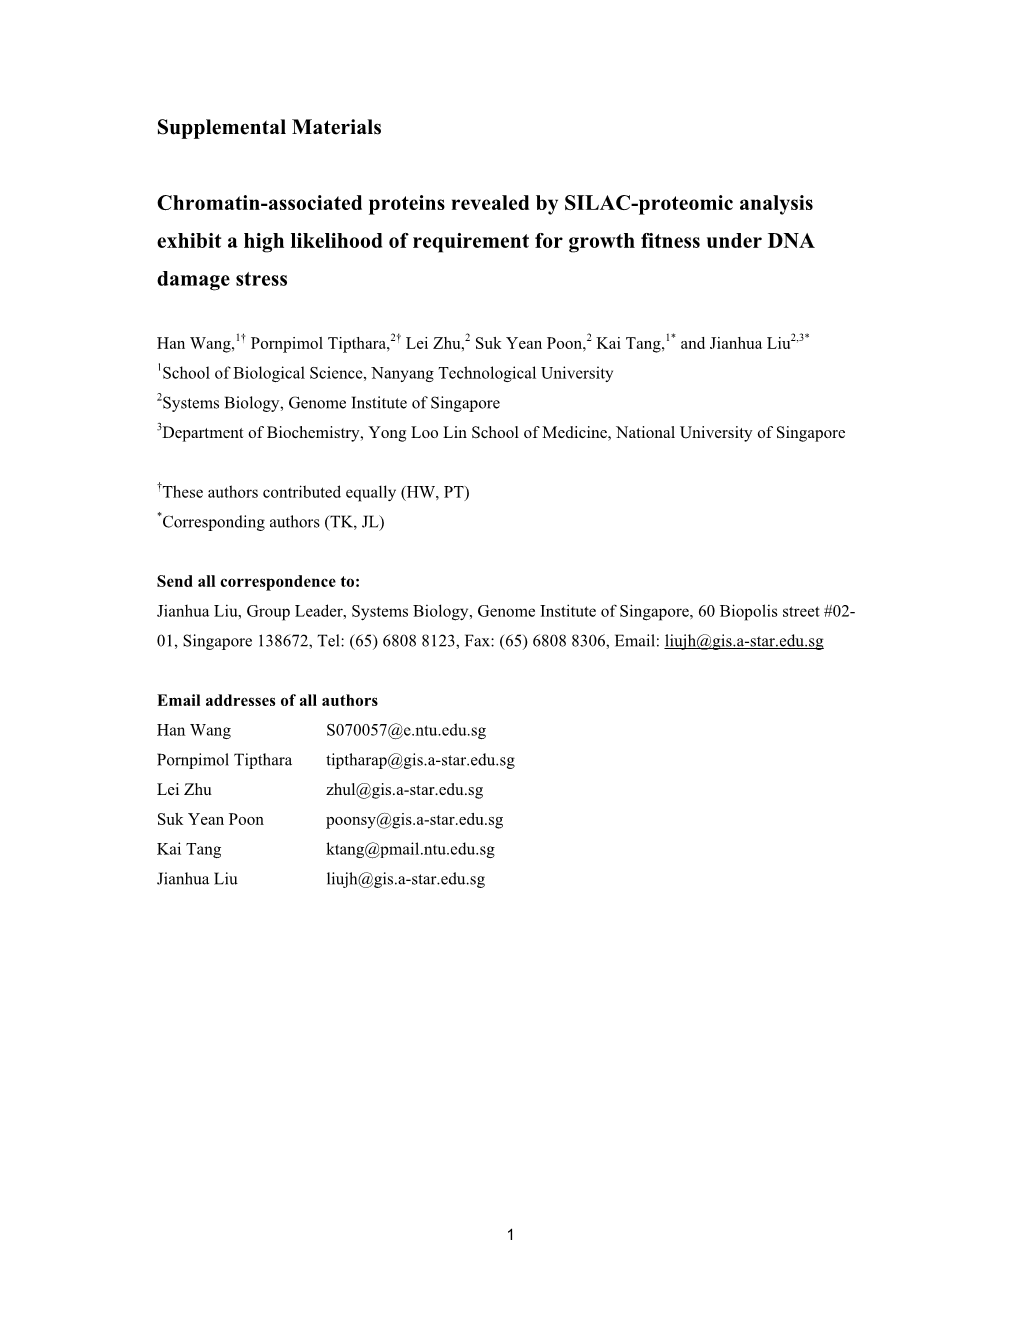 Supplemental Materials Chromatin-Associated